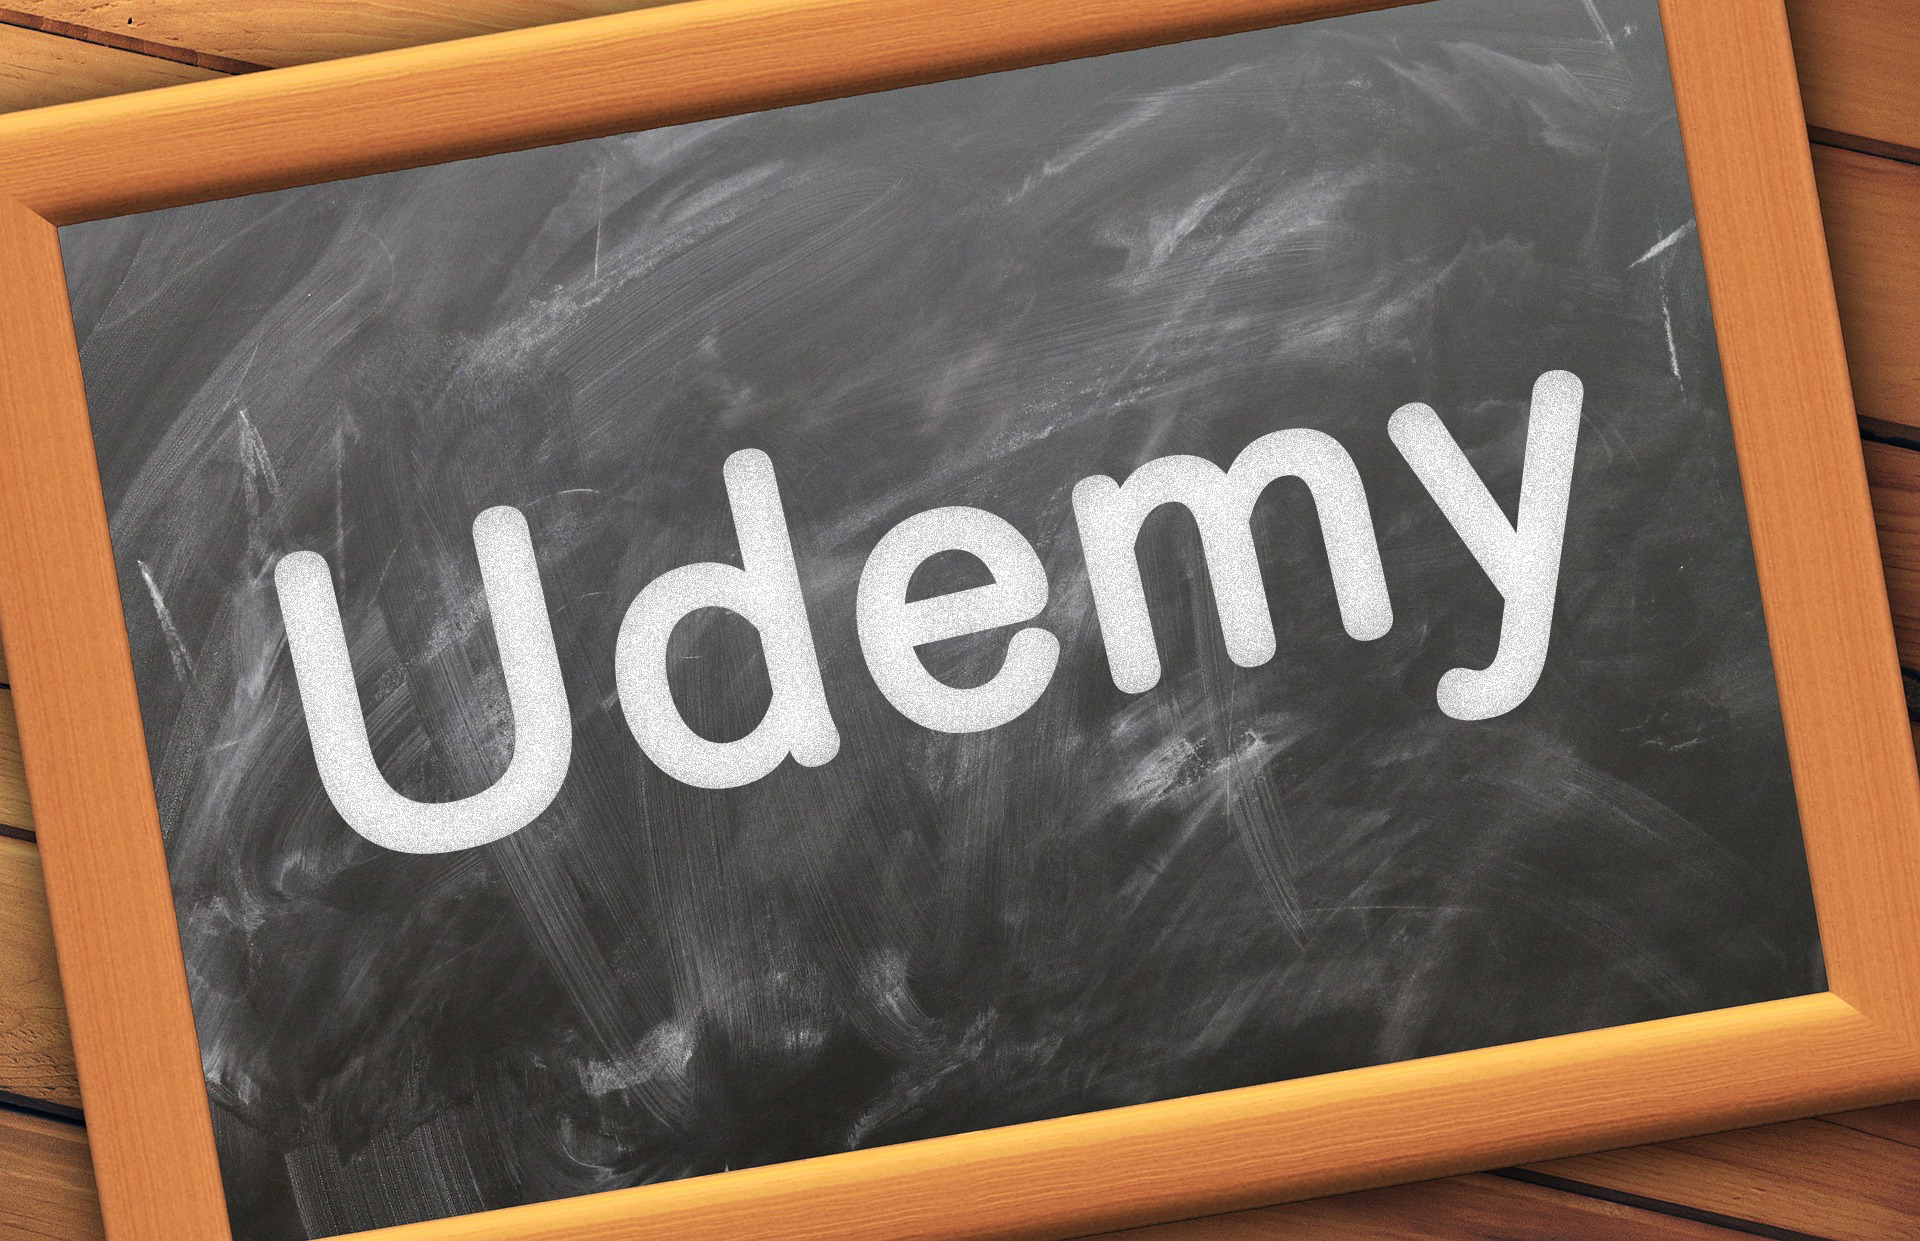 Udemy（ユーデミー）の動画学習で手軽に自分のペースで学ぶ